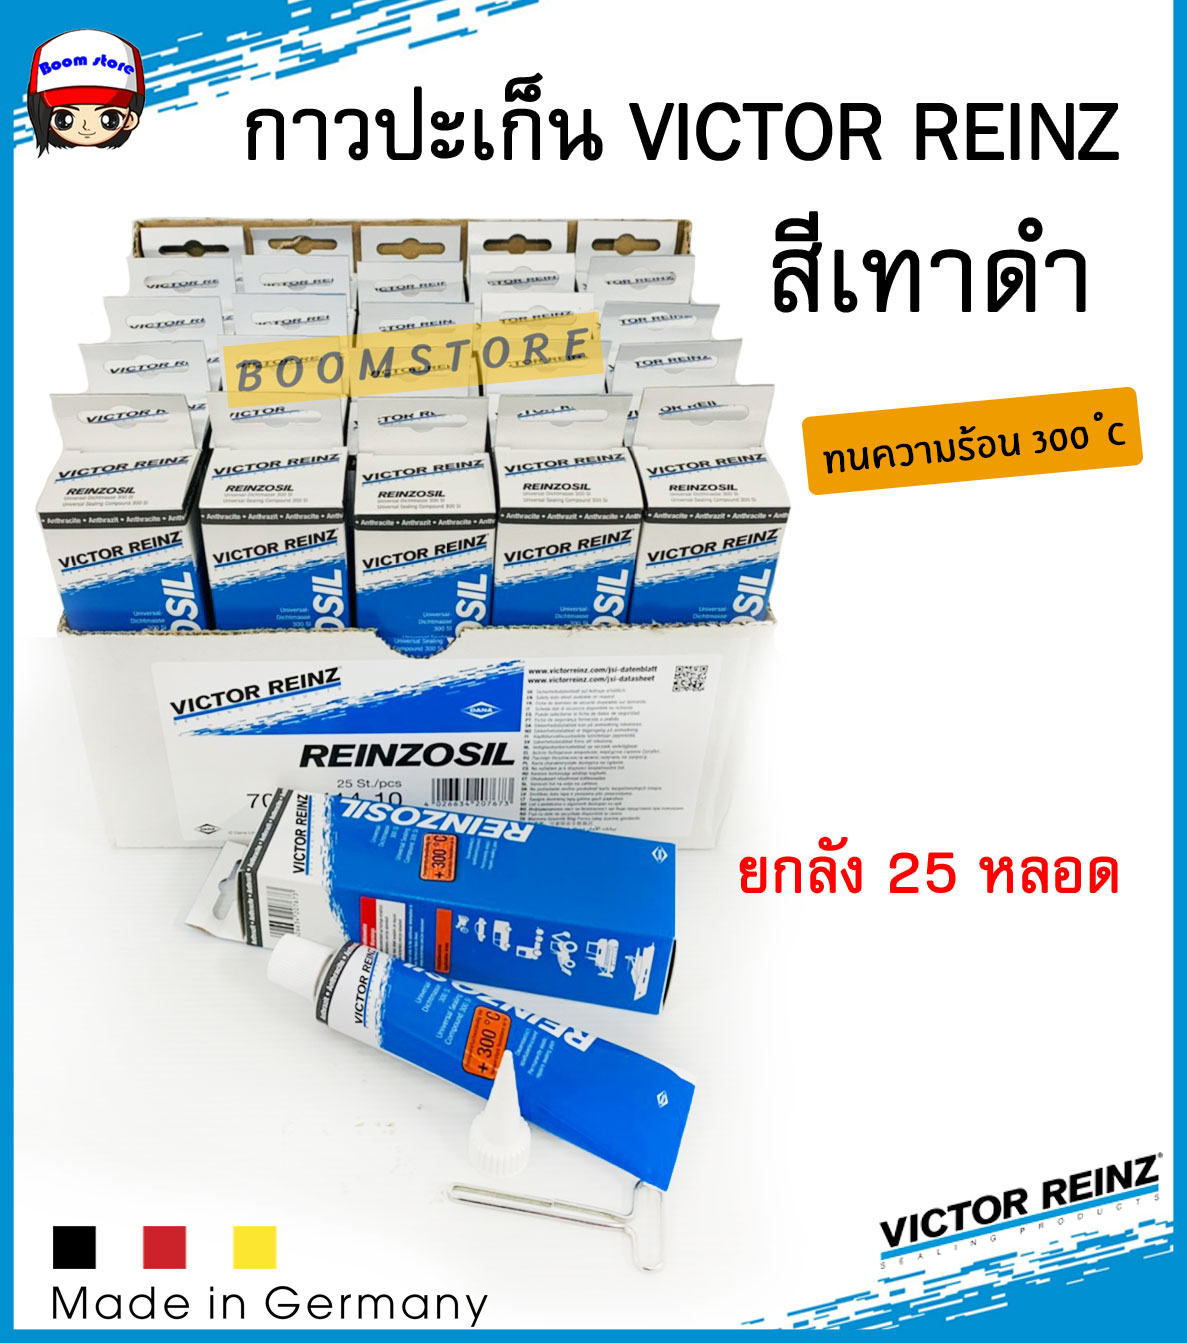 กาวทาประเก็นวิคเตอร์ไรนซ์  กาว VICTOR REINZ REINZOSIL สีเทาดำ ขนาด 70 ml. ยกลัง 25 หลอด Made in Germany ทนความร้อนสูง+300องศา